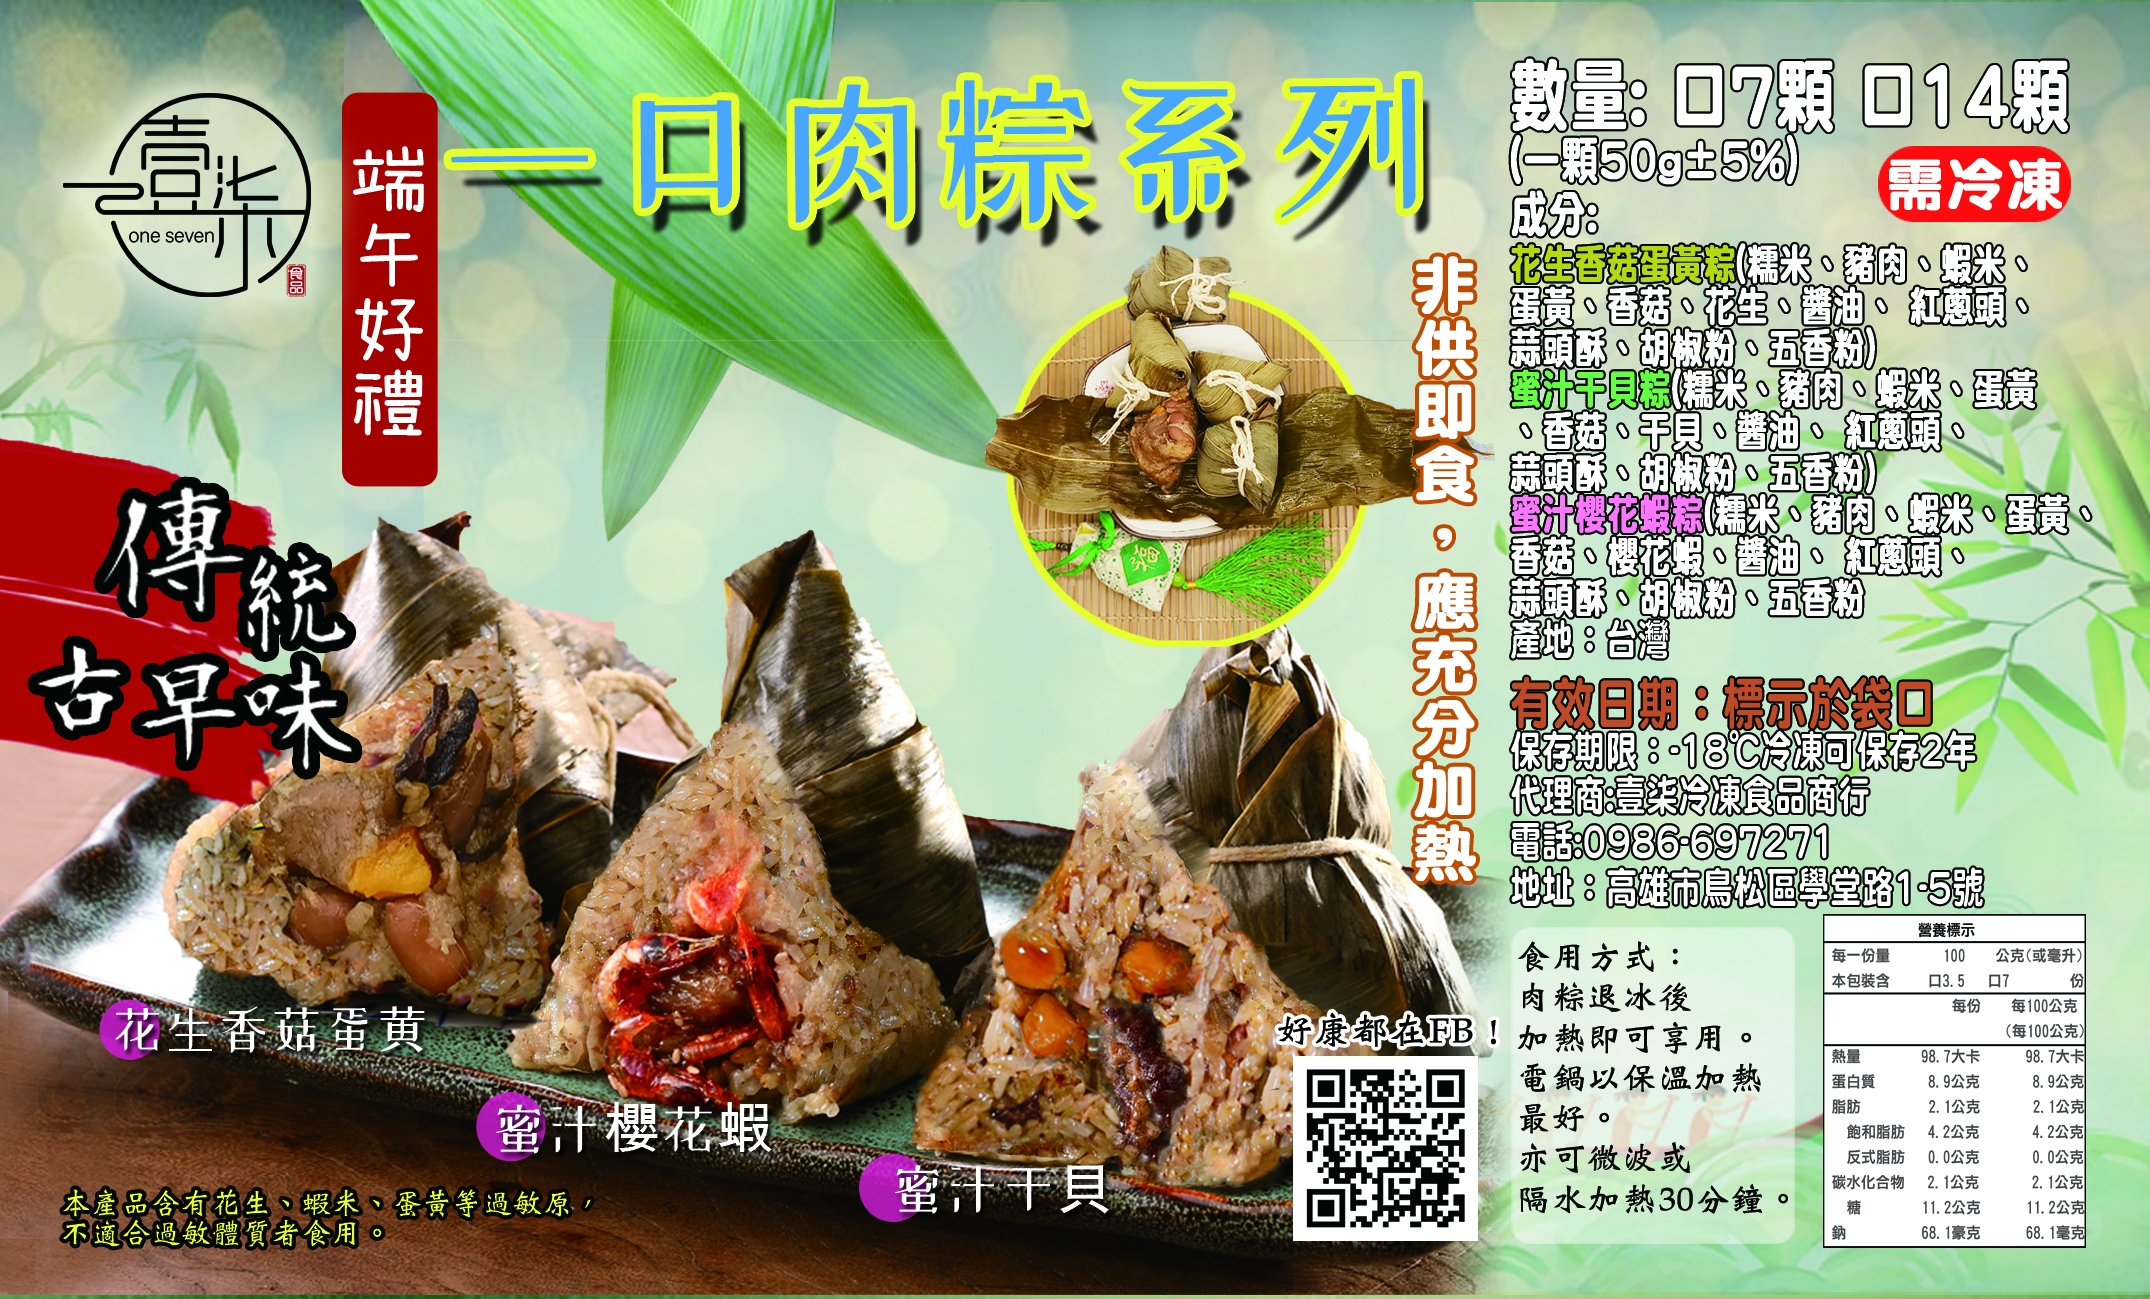 【517】超夯手工一口粽保冰袋組(7顆/組) 花生香菇蛋黃粽+櫻花蝦粽+干貝粽